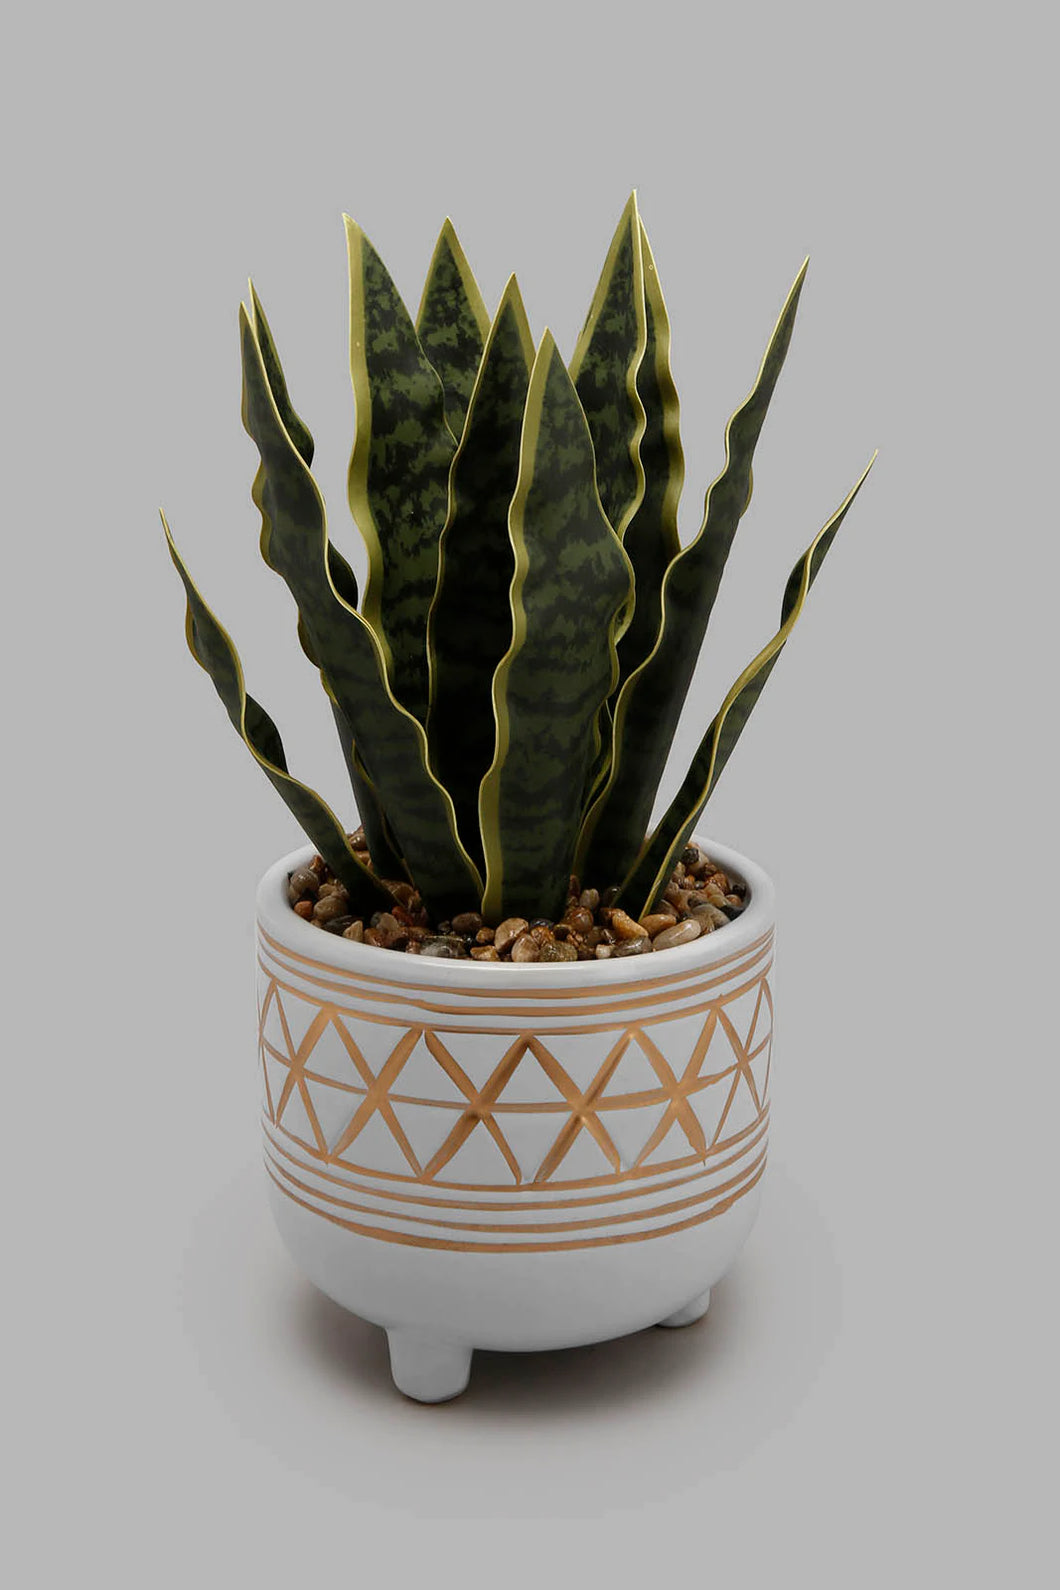 Artificial Plant in Ceramic Pot نبات اصطناعي في وعاء سيراميك باللون الوردي